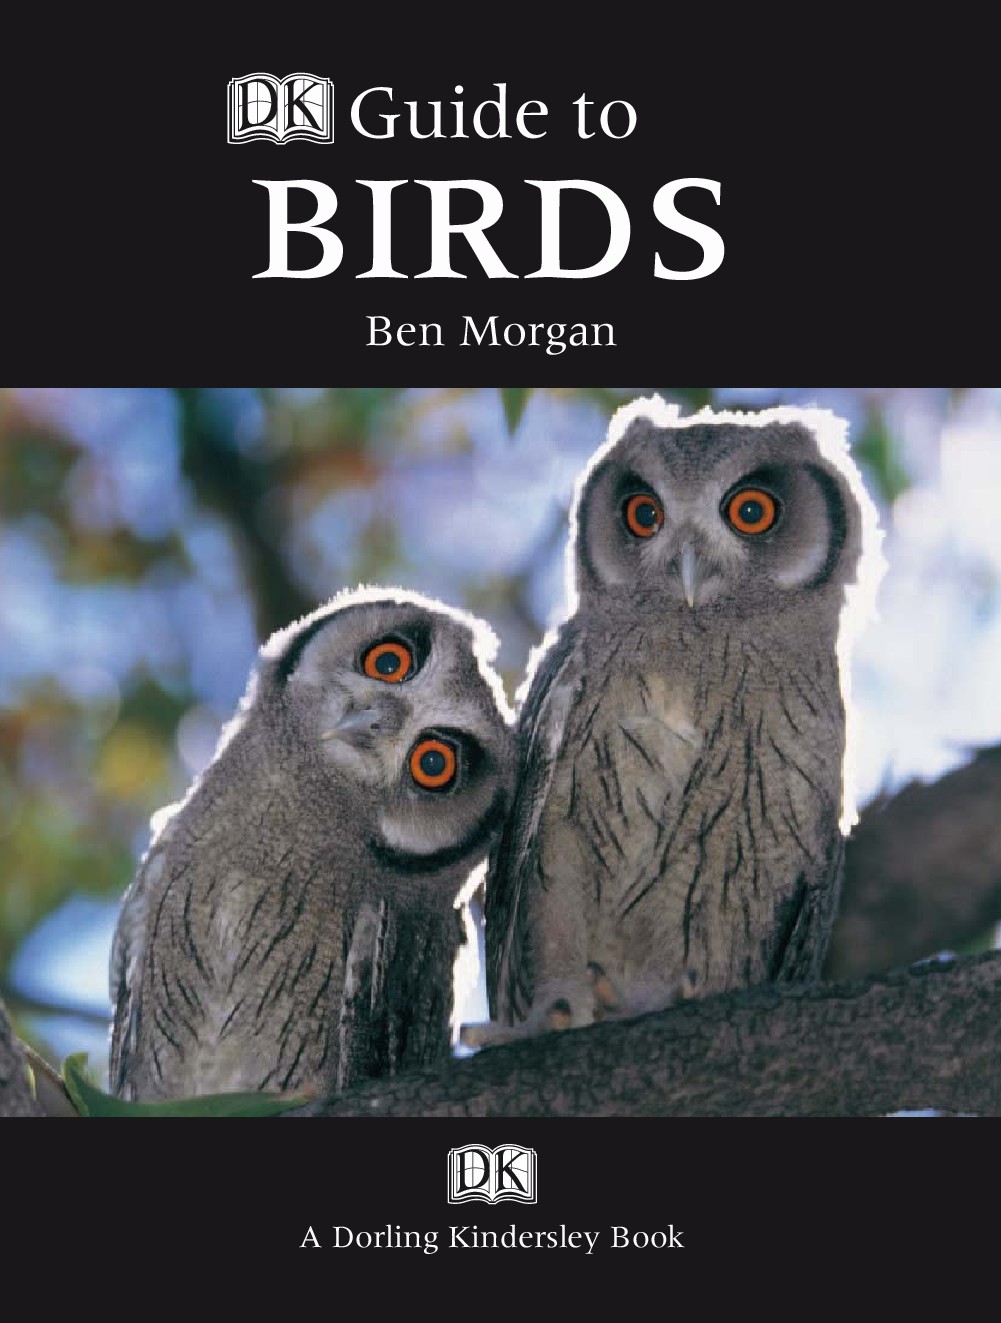 DK Guide to Birds (Ben Morgan)